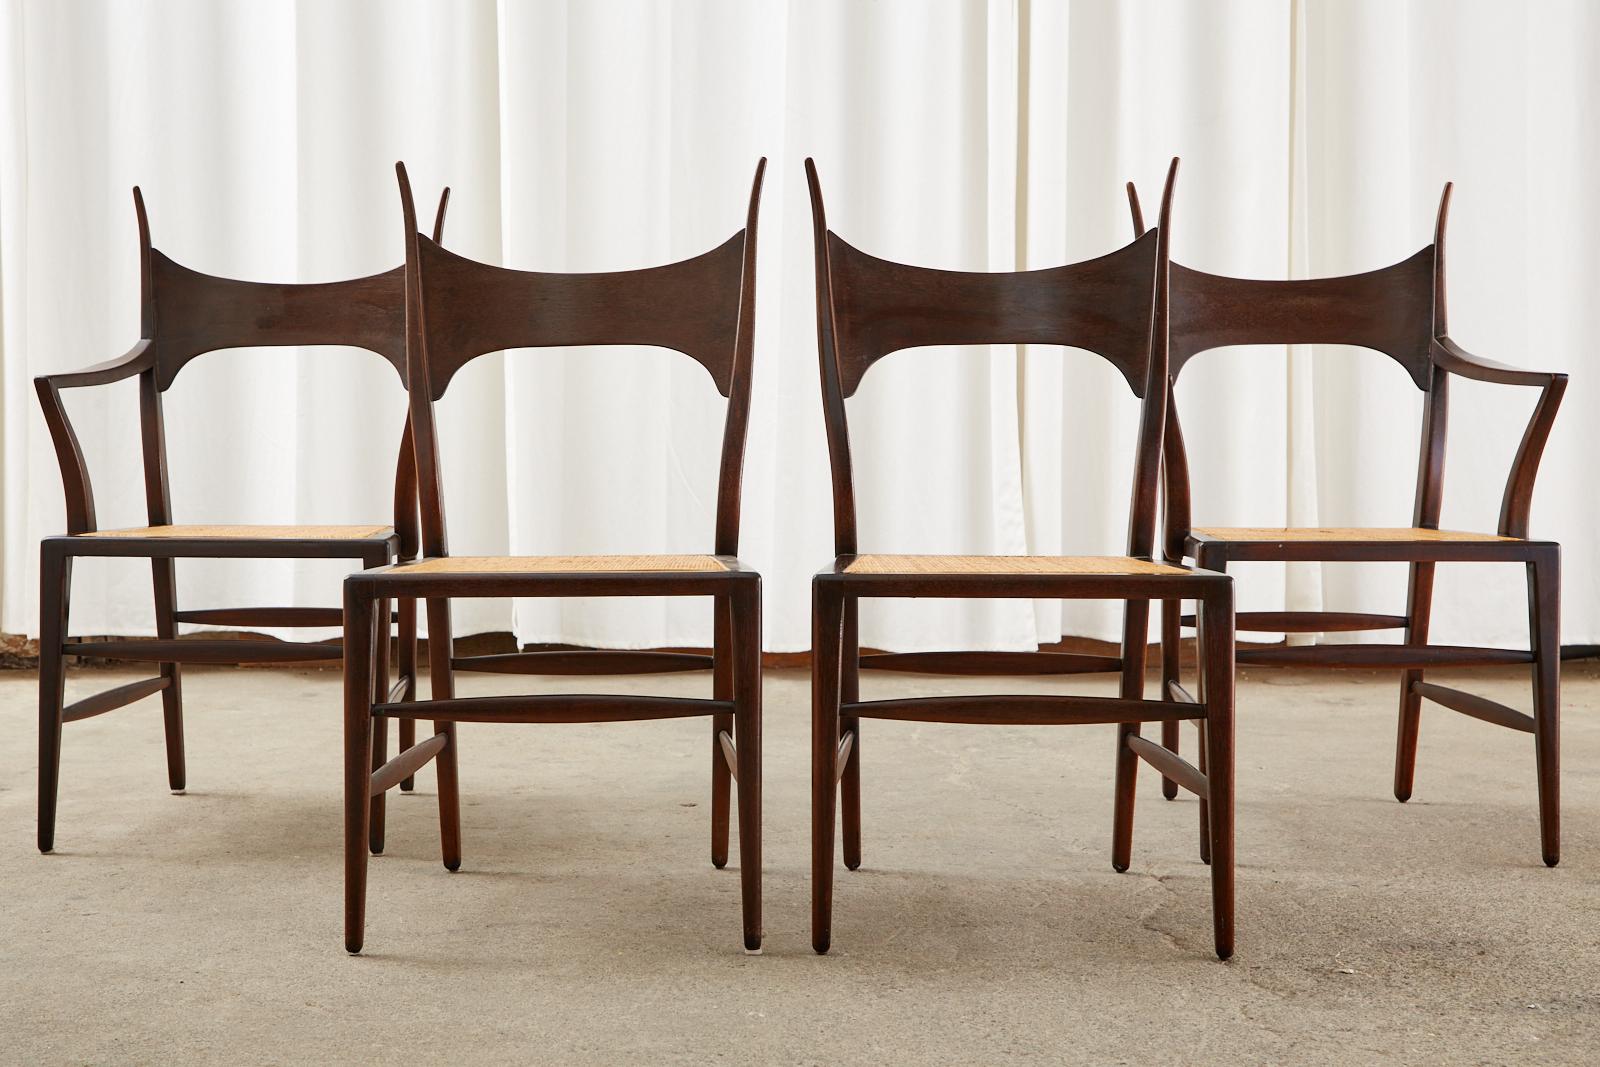 Ikonischer und seltener Satz von vier Stühlen mit Horngeweih, entworfen von Edward Wormley für Dunbar. Bekannt als 5580 Modell Esszimmerstühle aus Mahagoni mit einem Rohrsitz. Dies sind wohl die schönsten Stuhldesigns, die er je entworfen hat, und